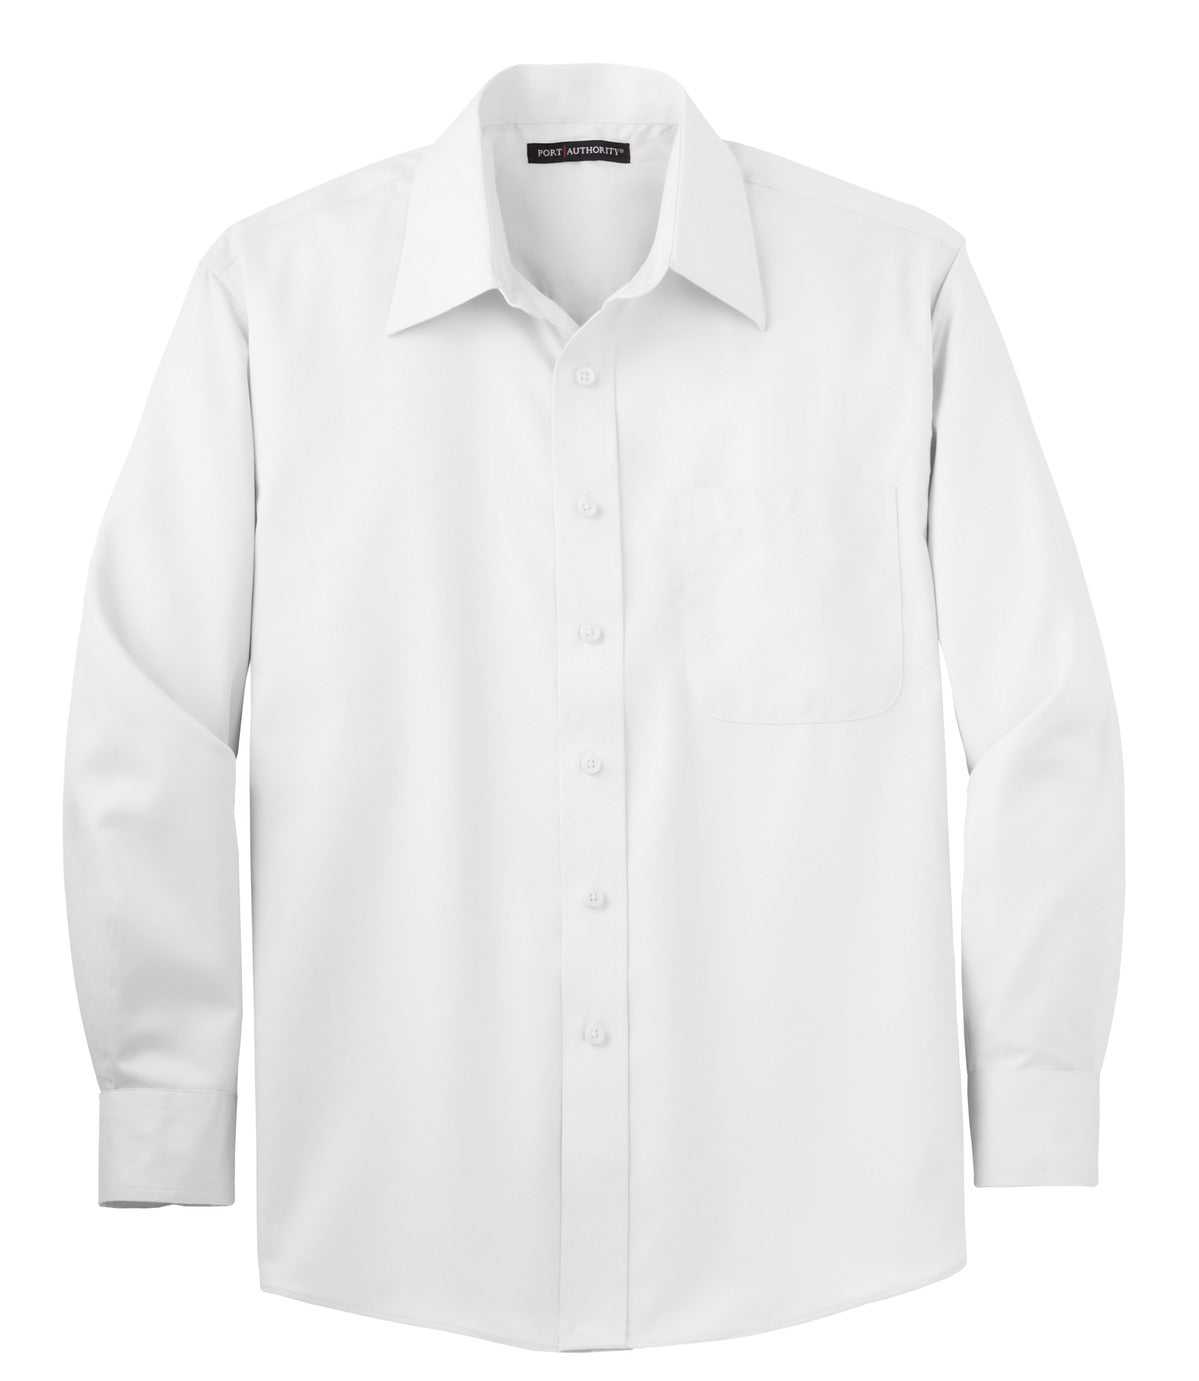 Port Authority S638 Non-Iron Twill Shirt - White - HIT a Double - 2